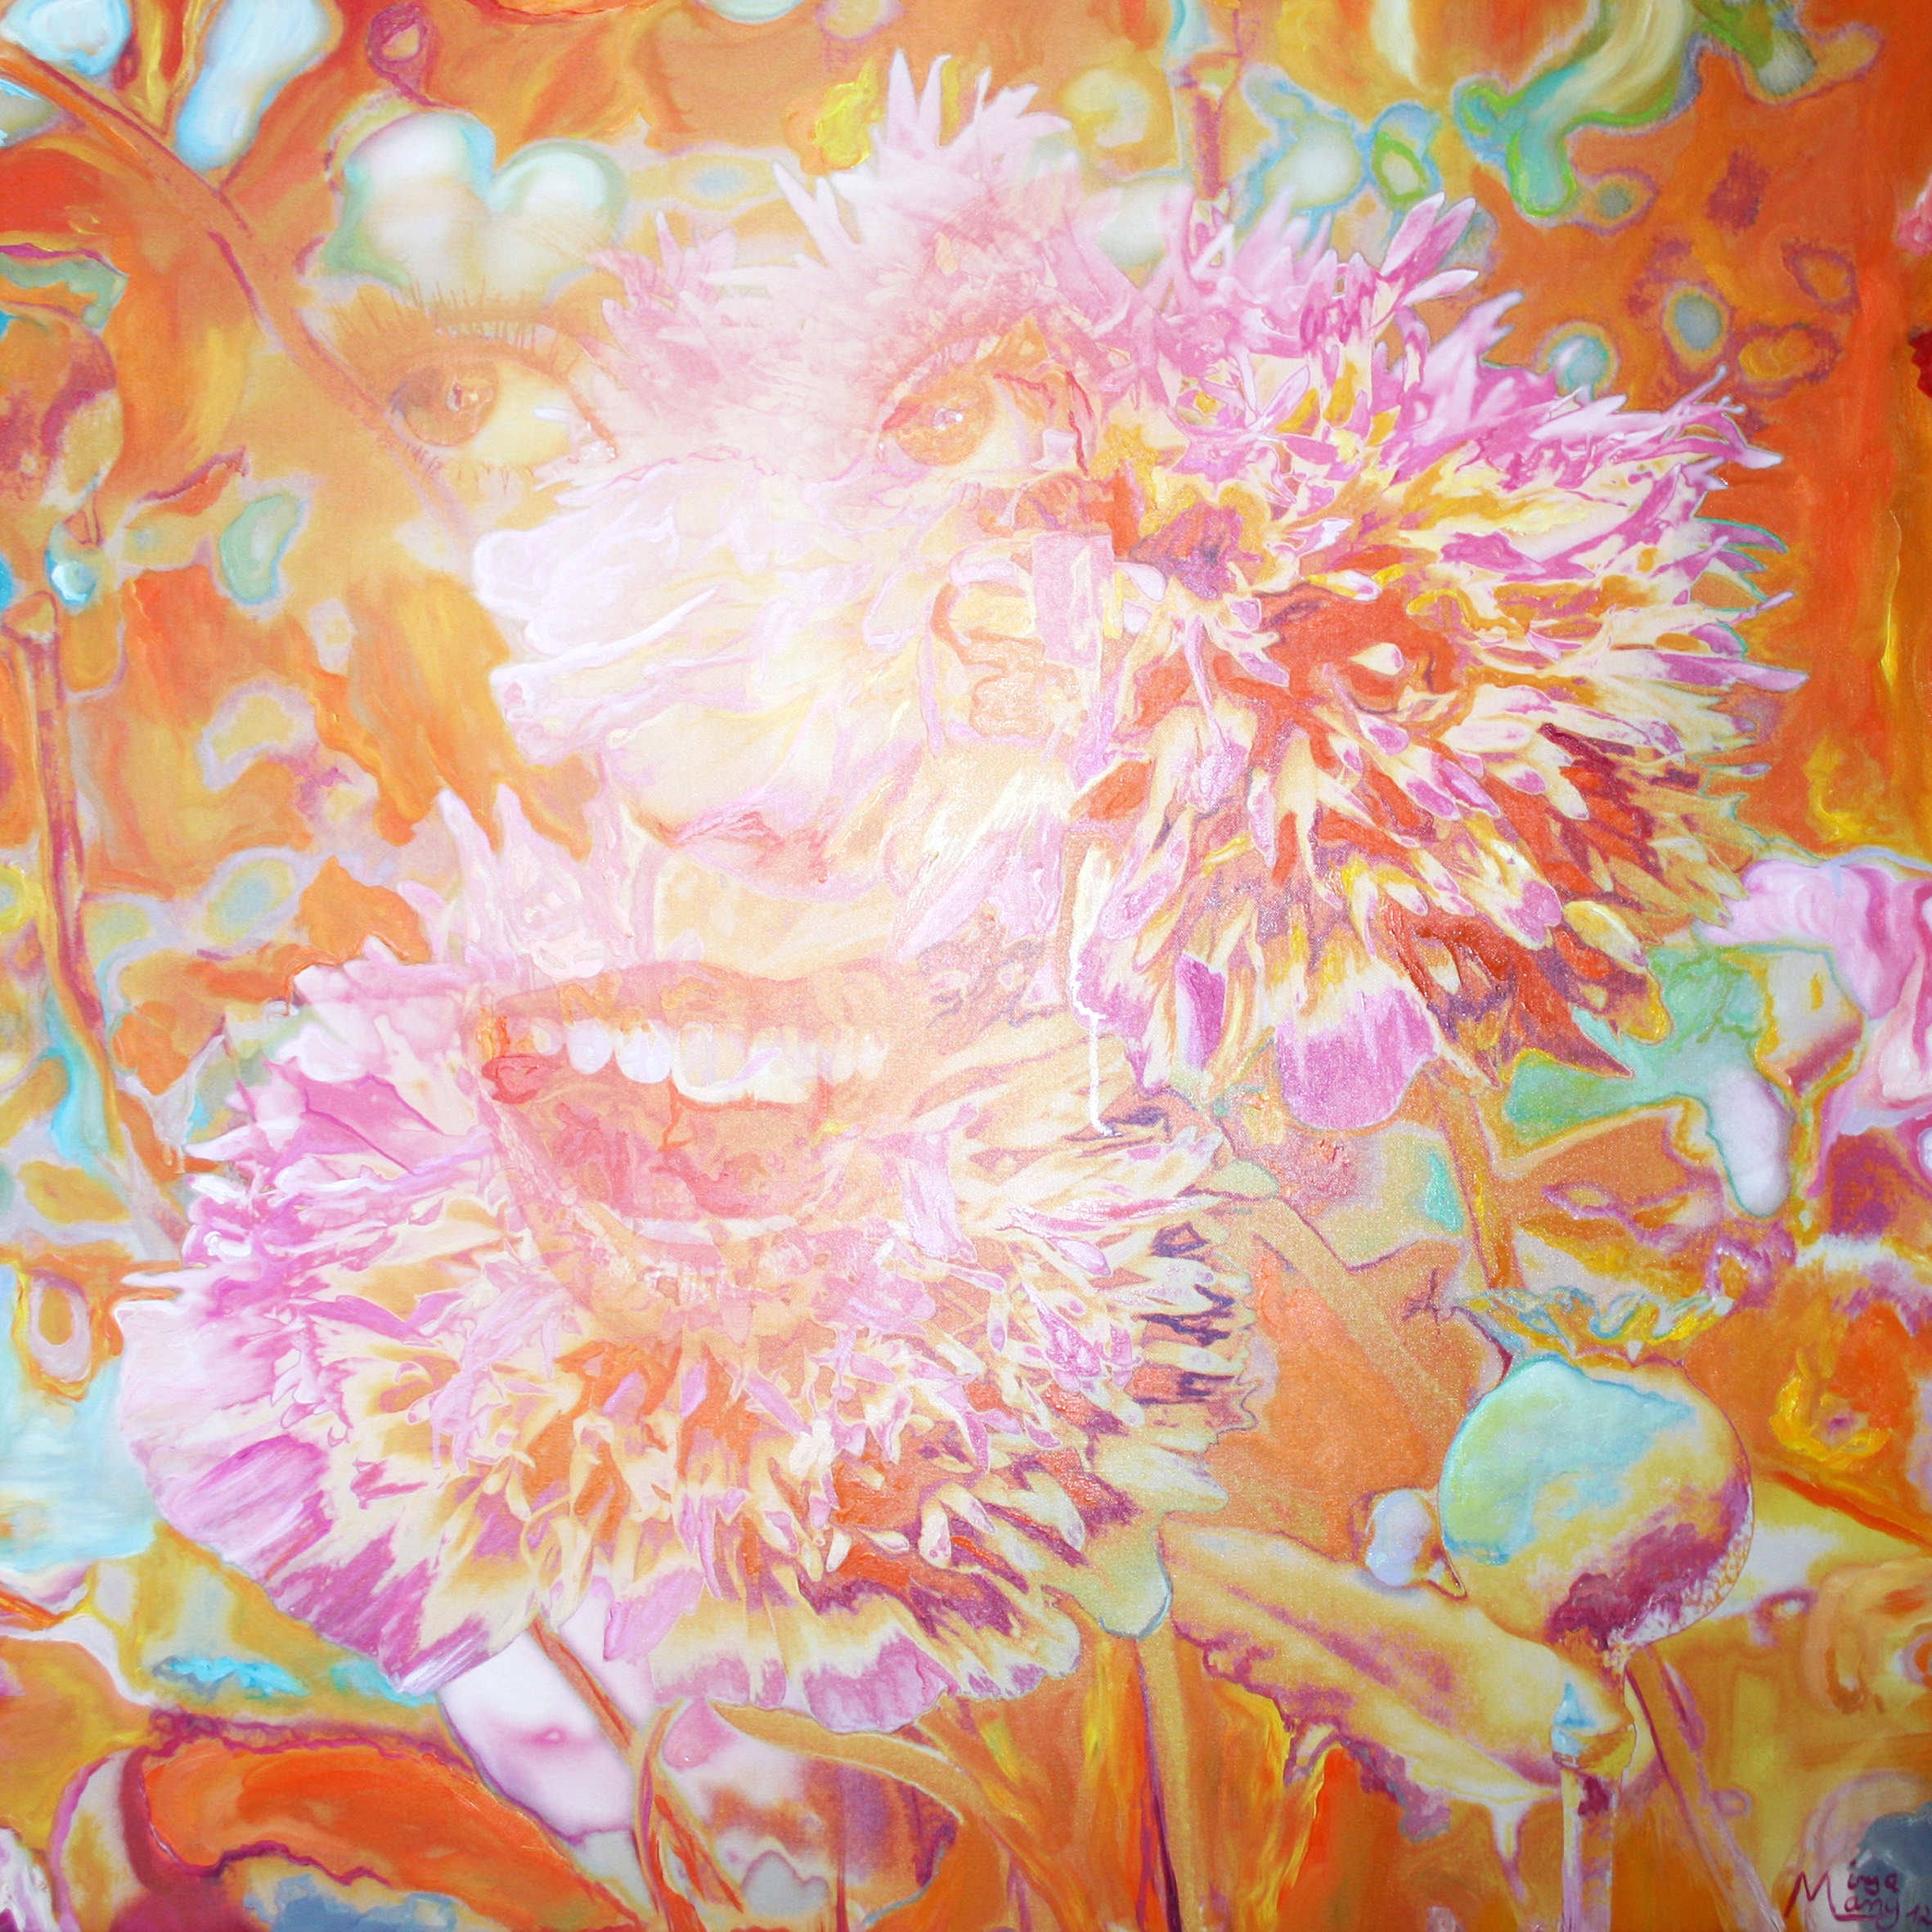 Bildtitel: „Pfingstrose“ Kunstdruck auf Leinwand aus der Bilderserie „Blumenessenzen“ von Mirja Lang
